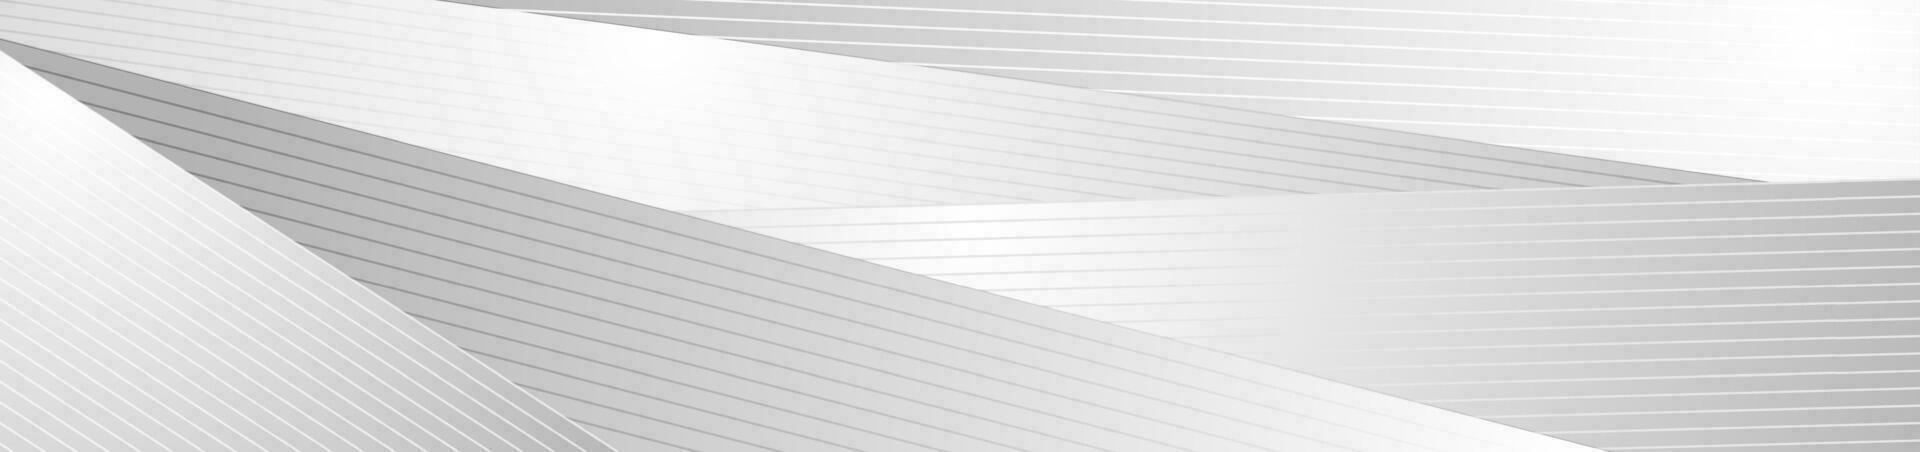 grijs minimaal strepen en lijnen abstract futuristische tech achtergrond vector